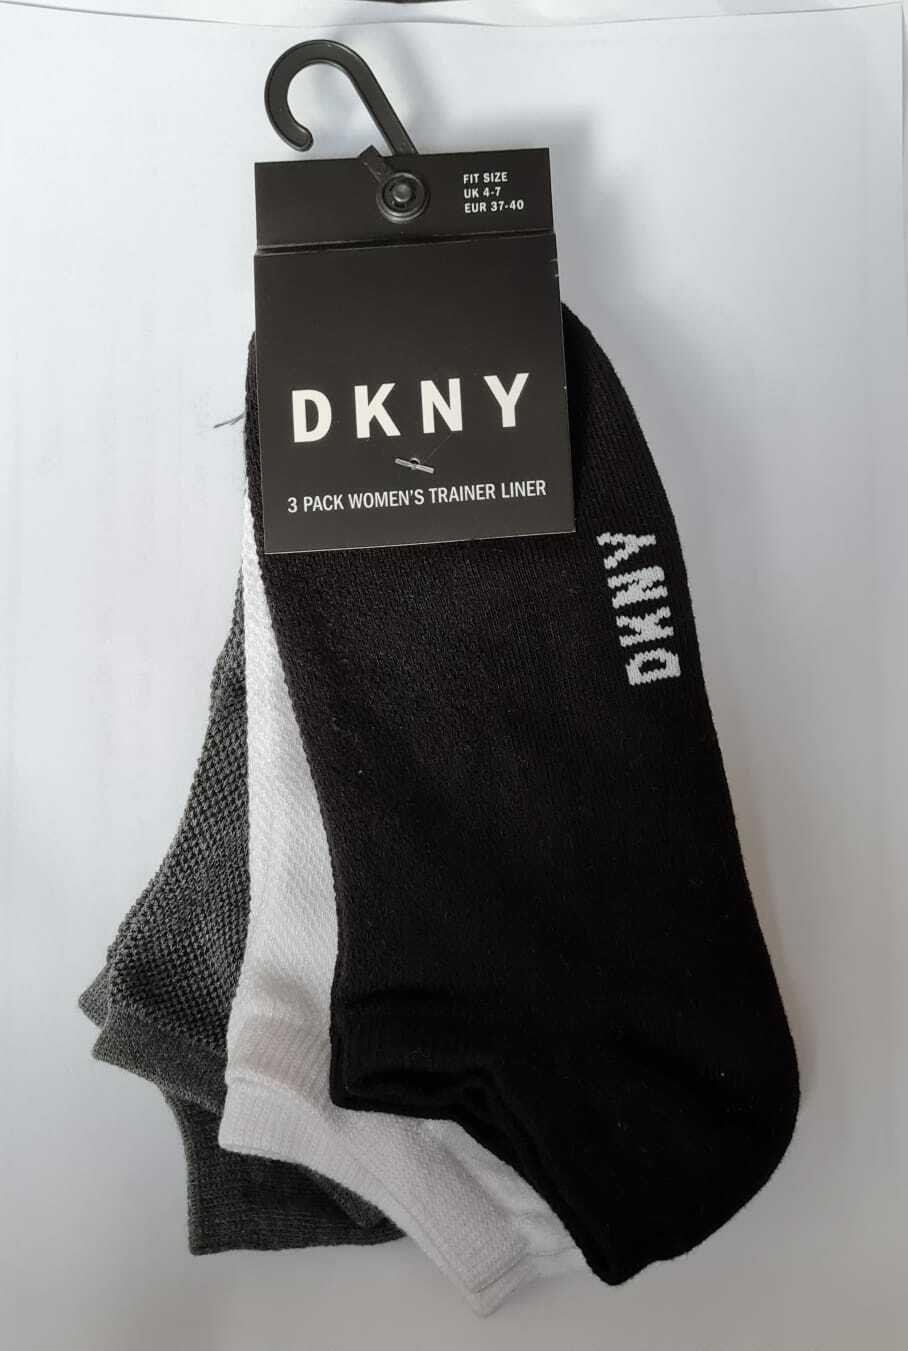 DKNY 3 Pack Women Trainer Liner Ankle Socks